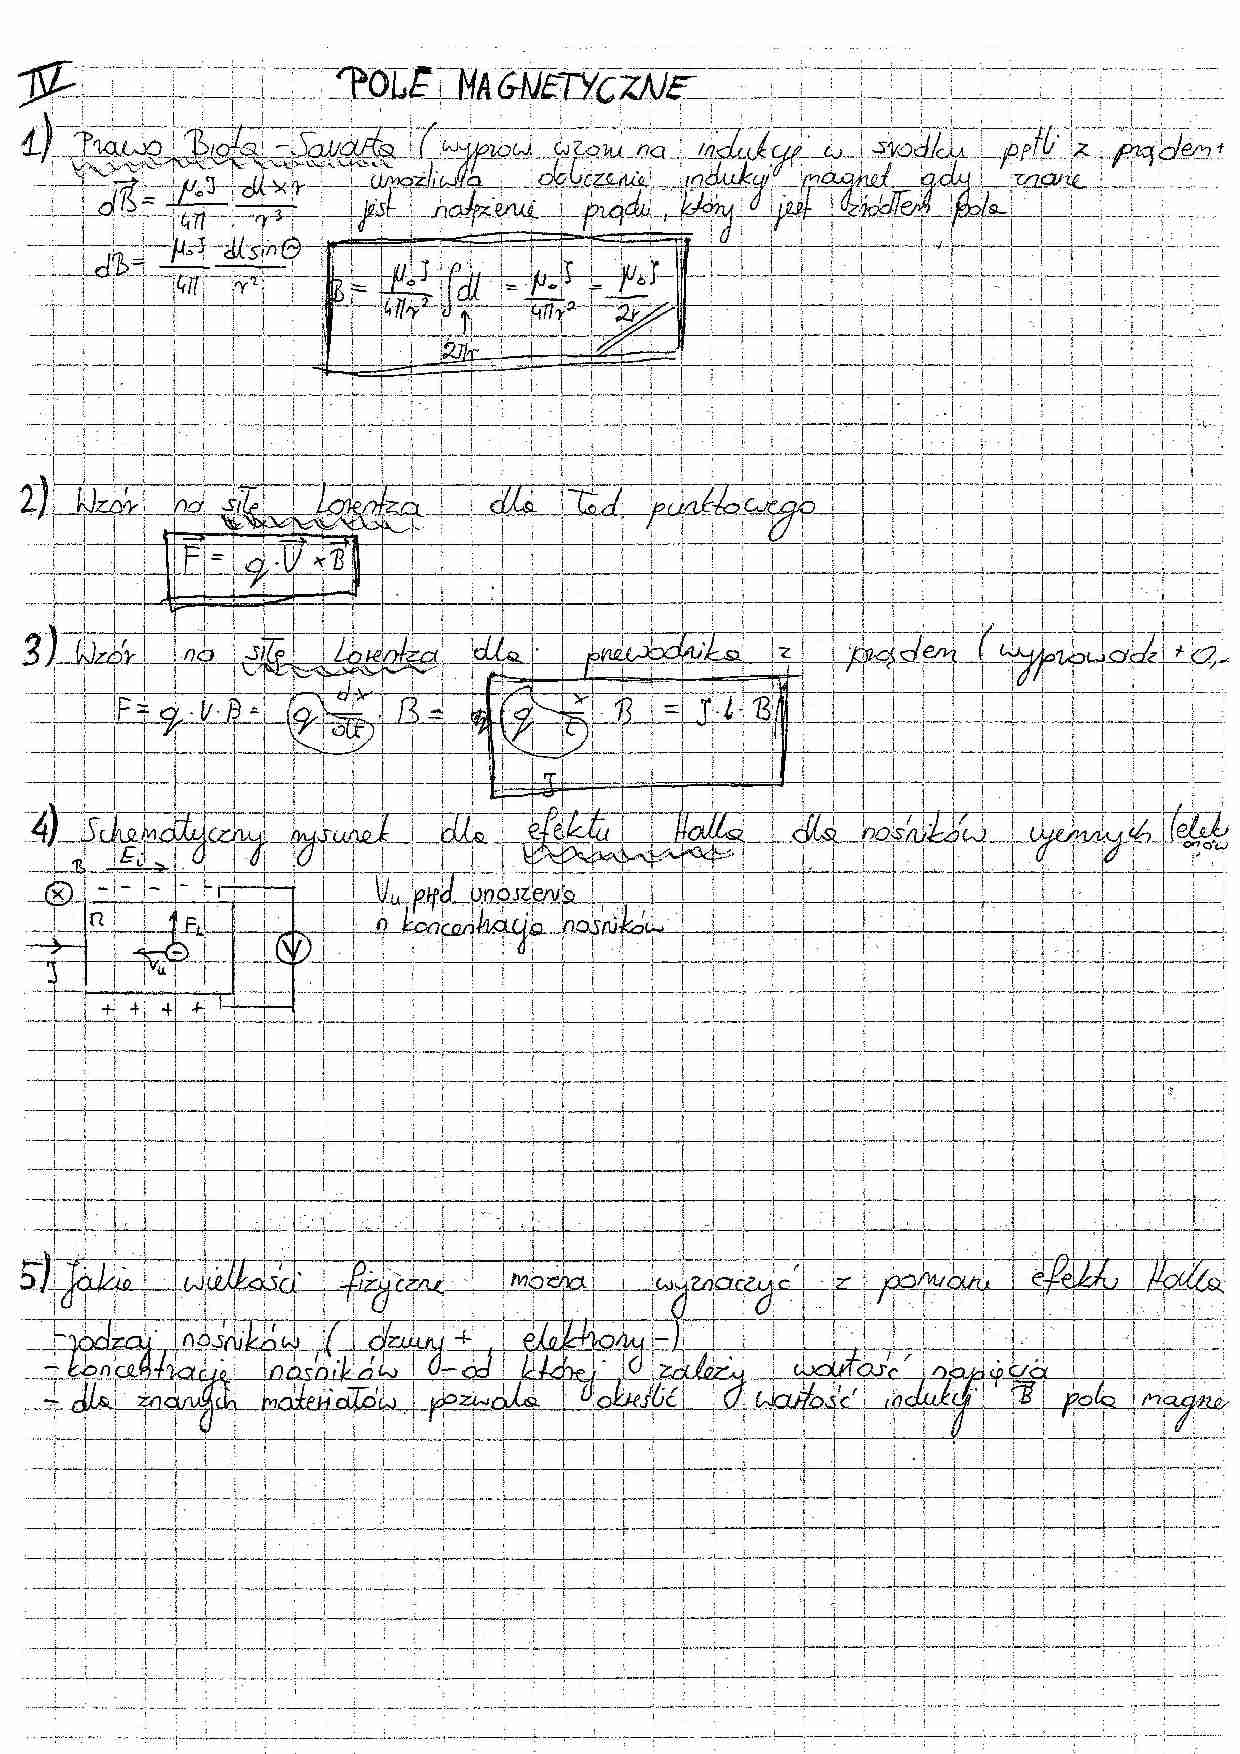 Pole magnetyczne - odpowiedzi na egzamin - strona 1